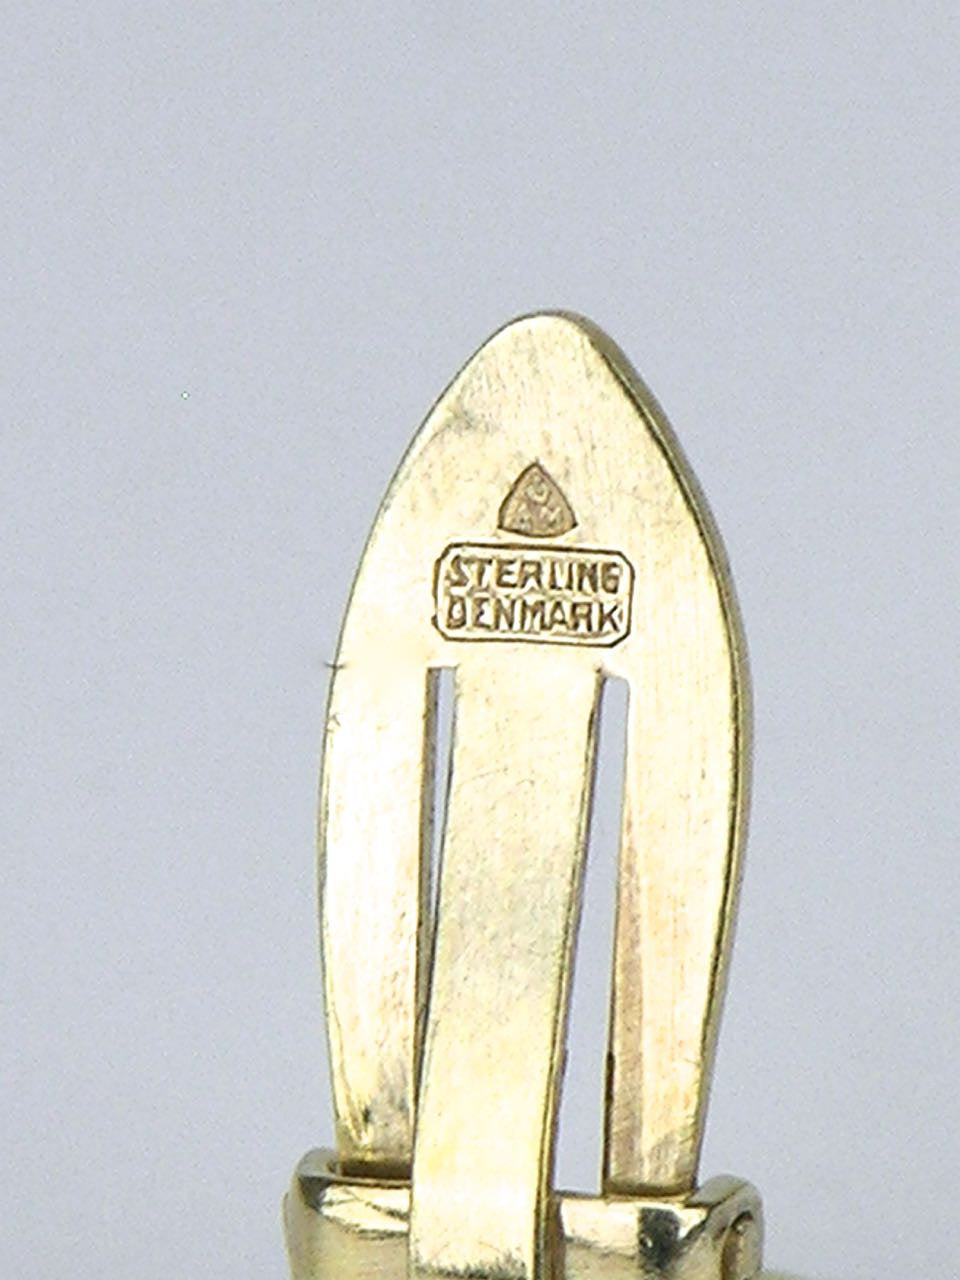 Anton Michelsen silver and enamel daisy clip earrings